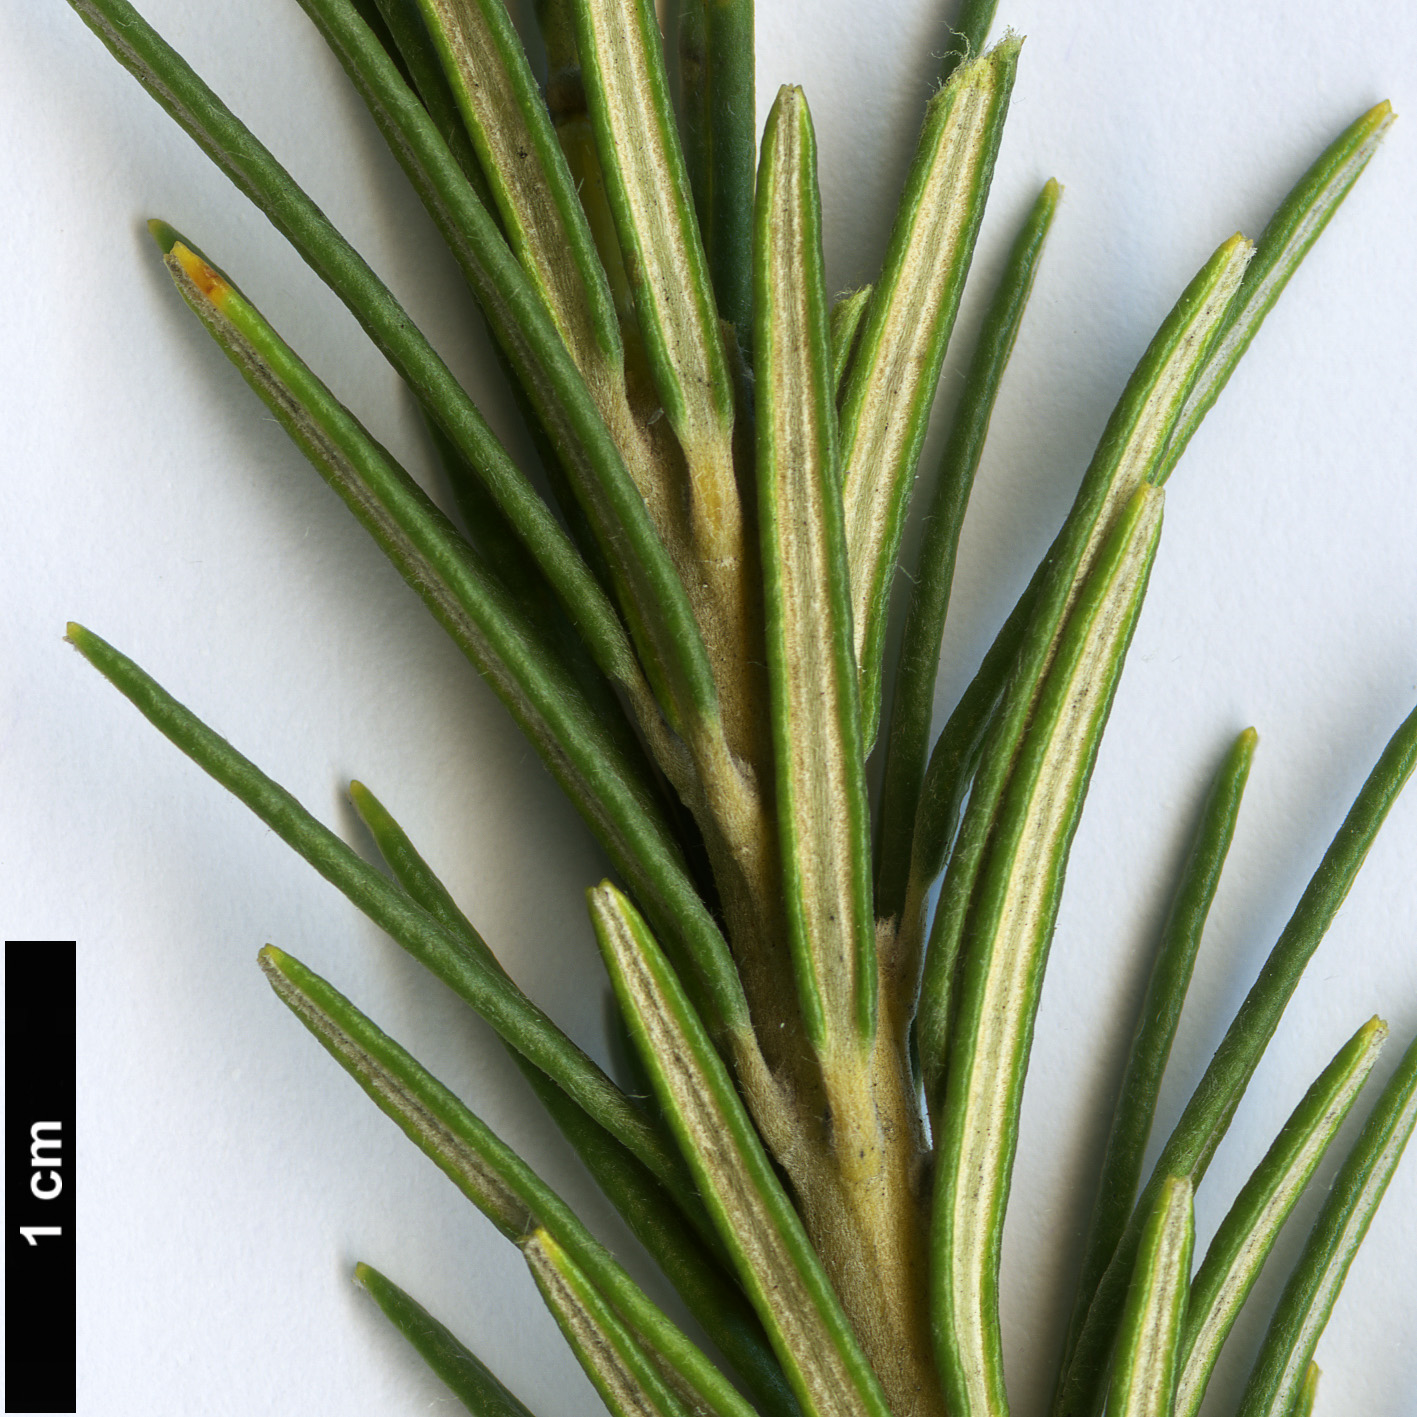 High resolution image: Family: Proteaceae - Genus: Banksia - Taxon: ericifolia - SpeciesSub: subsp. ericifolia